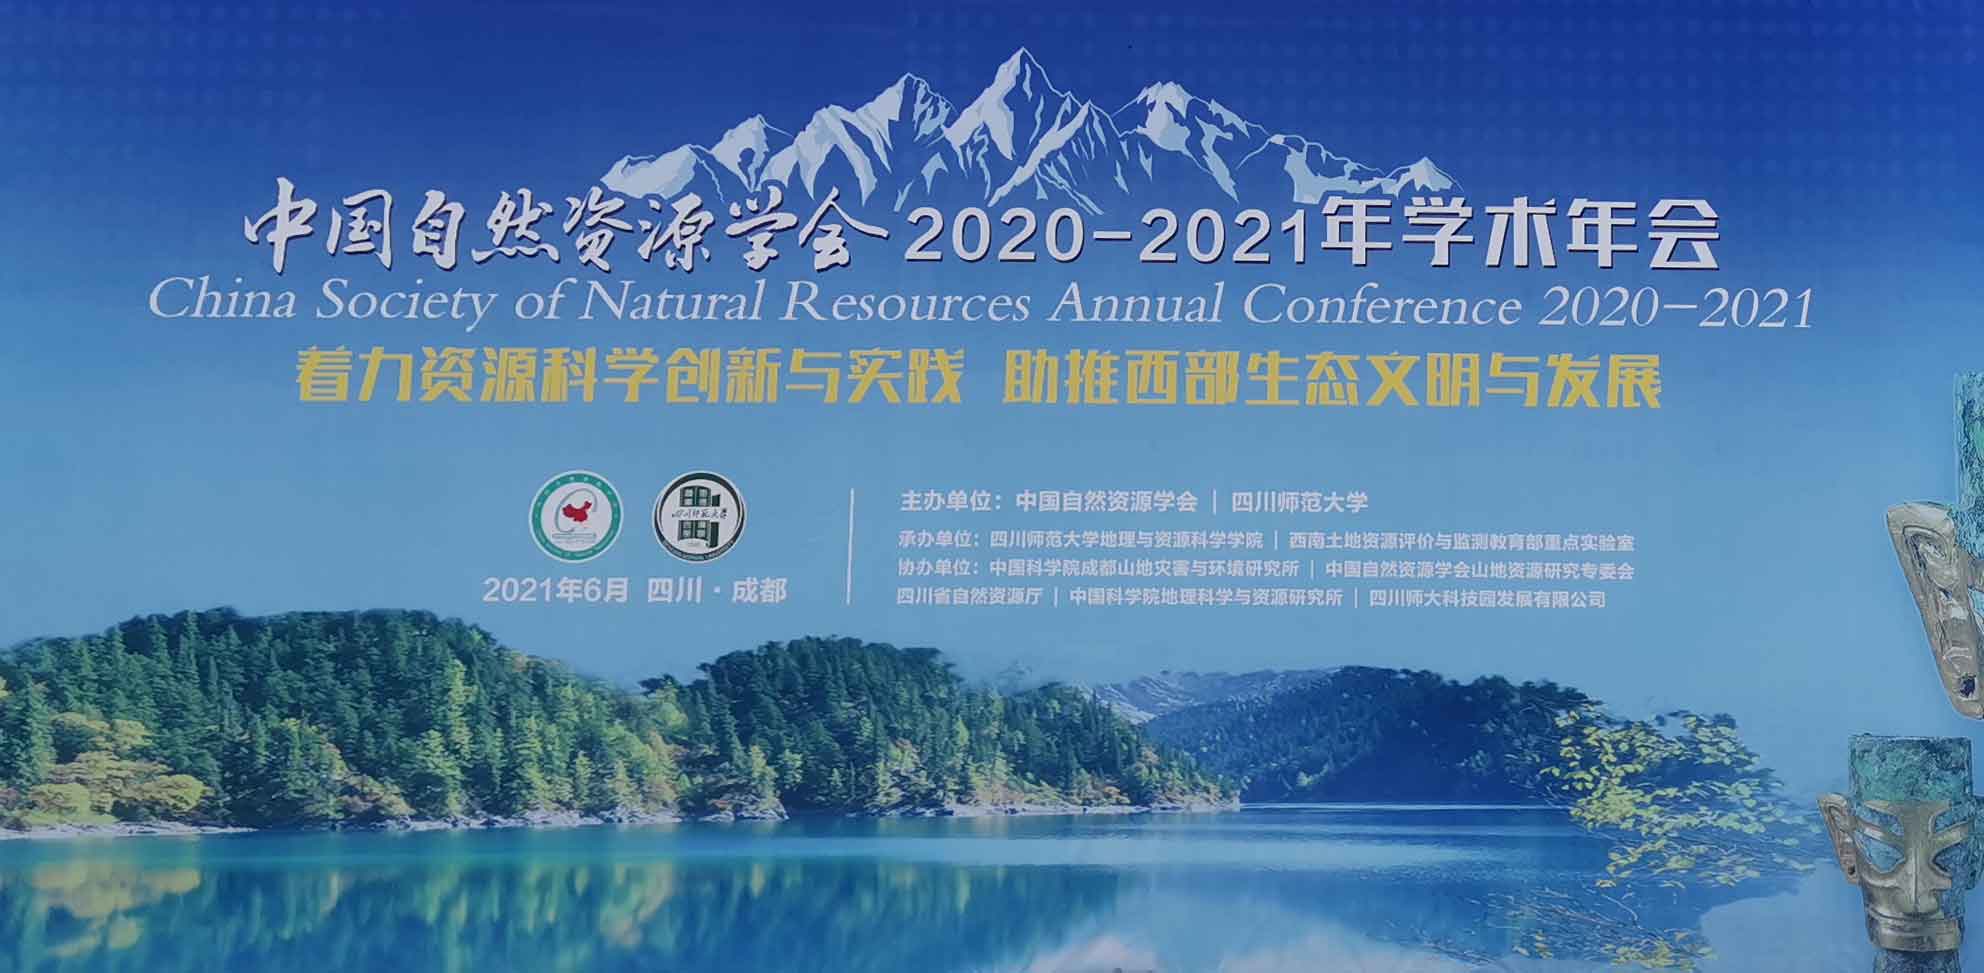 理加联合中国自然资源学会森林资源分会 2020-2021 年学术年会